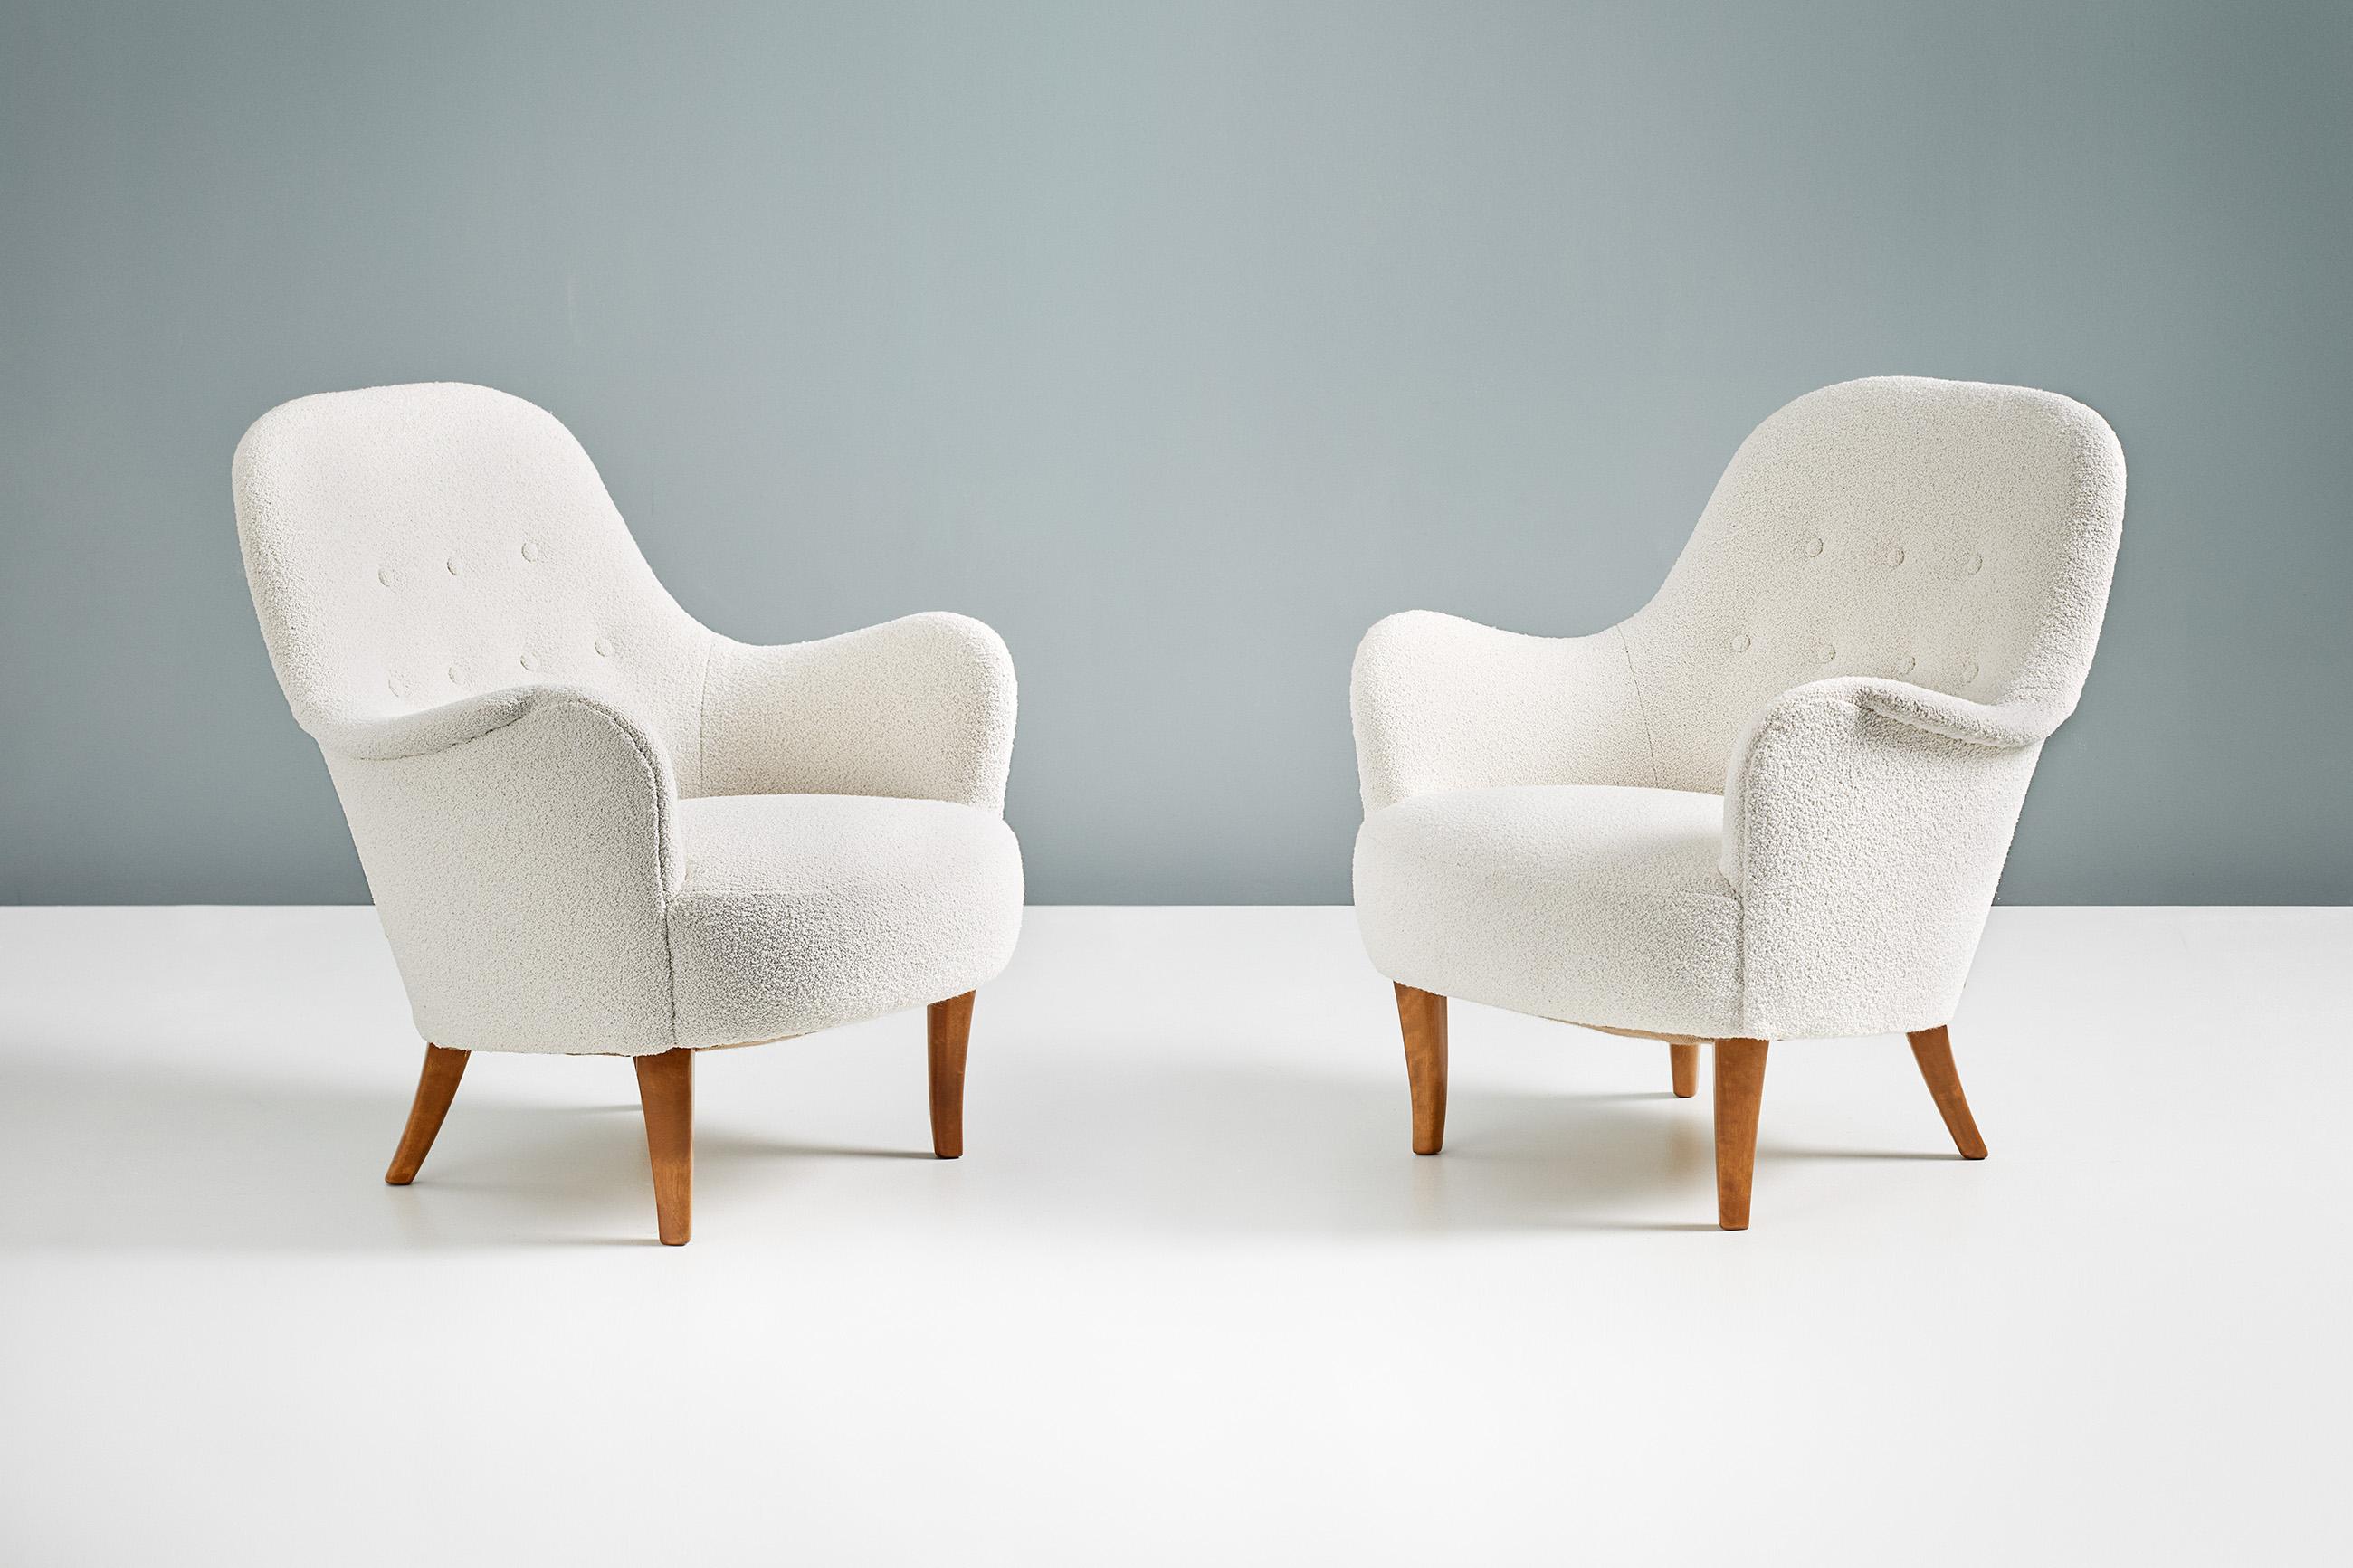 Carl Malmsten 'Cirkus' Lounge-Stühle, 1950er Jahre

Ein Paar Sessel, entworfen von Carl Malmsten in den 1950er Jahren und hergestellt in Schweden. Dieses Paar wurde mit dem luxuriösen, cremefarbenen Woll-Baumwoll-Mischgewebe 